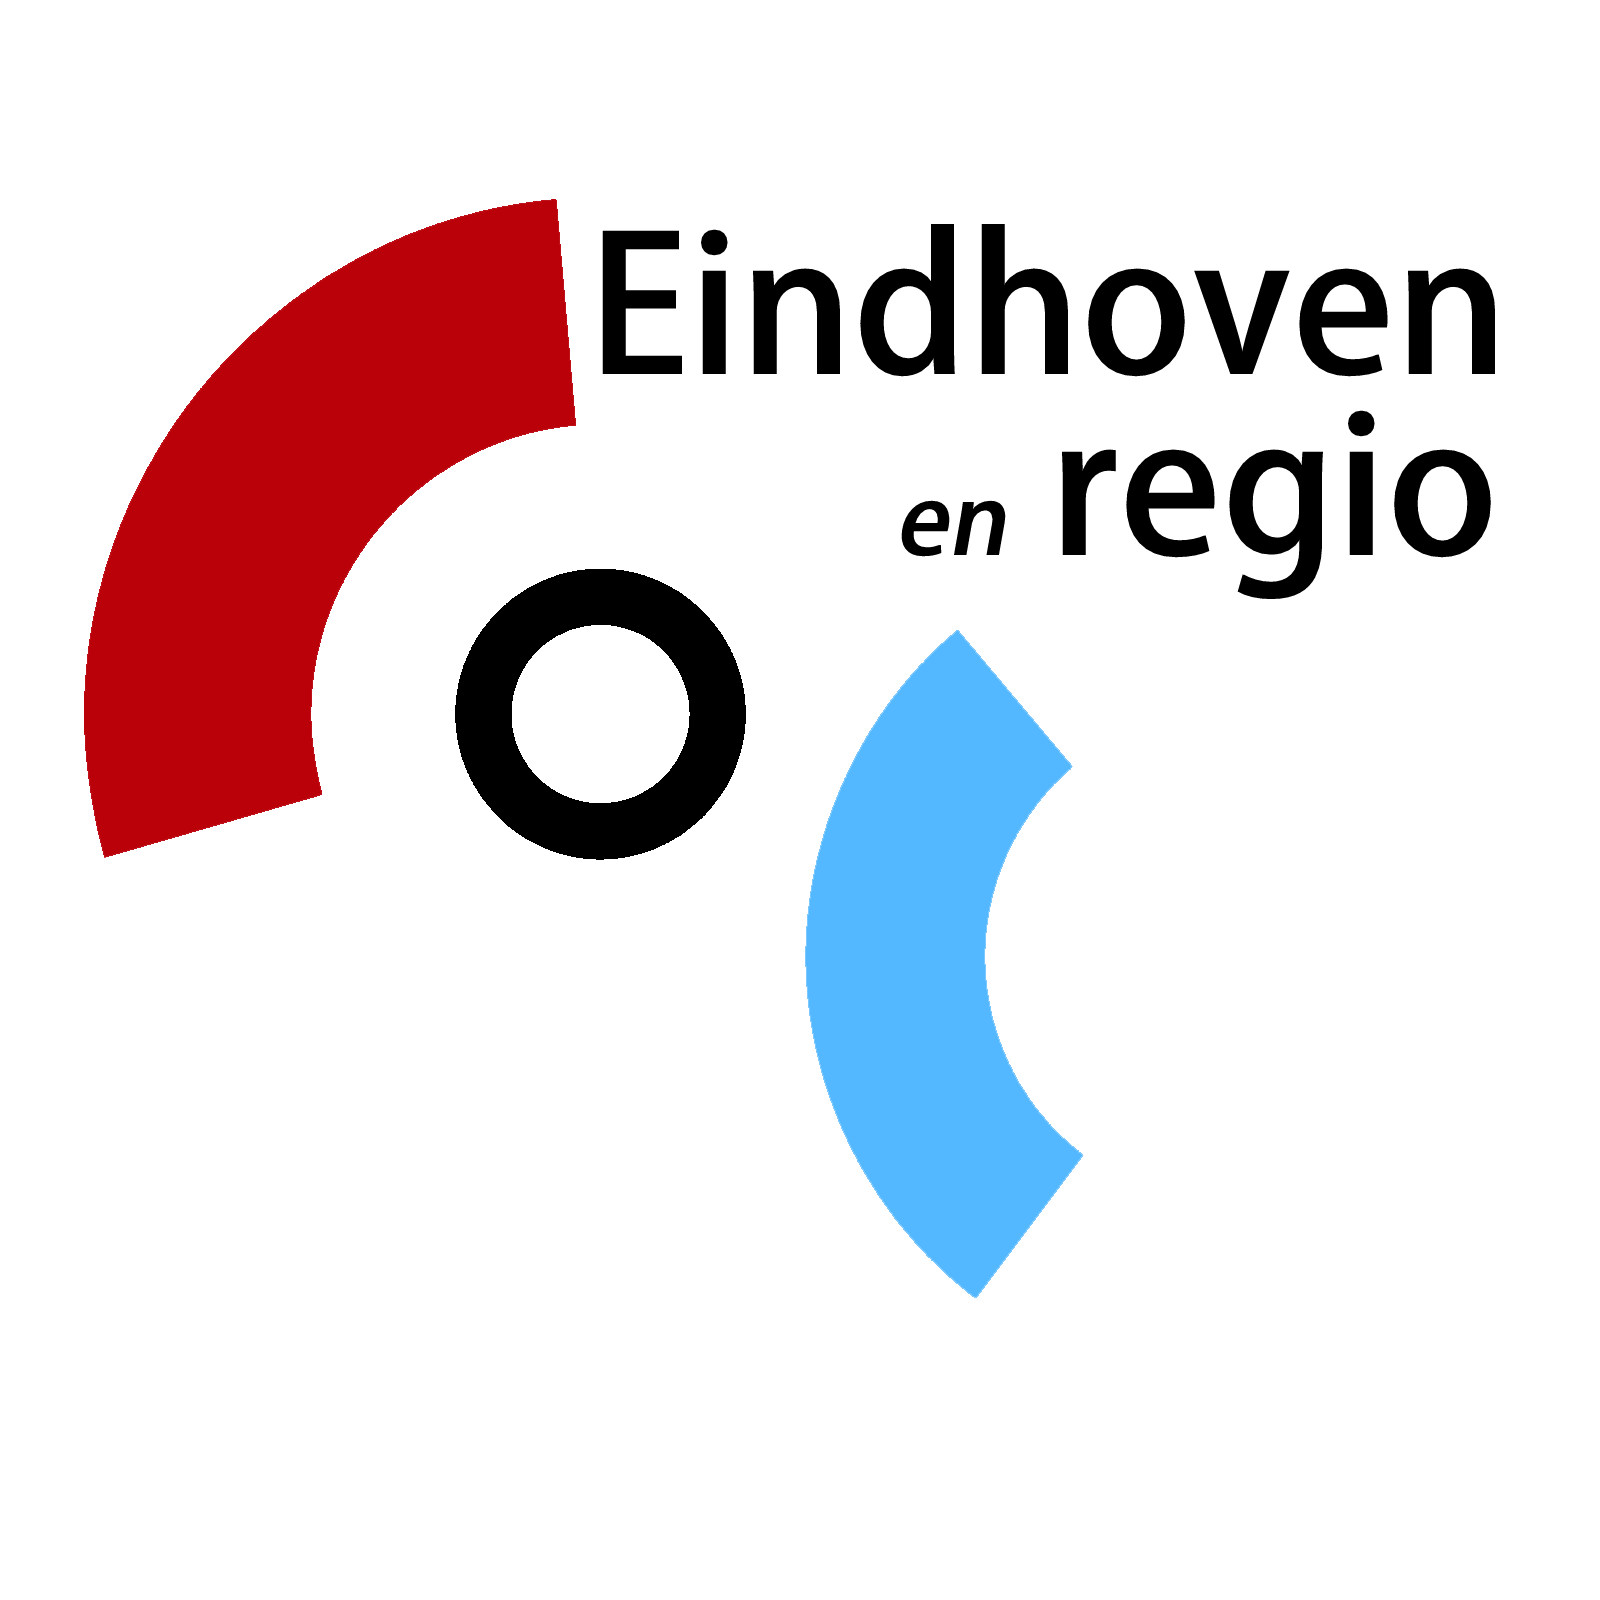 COC EIndhoven en regio